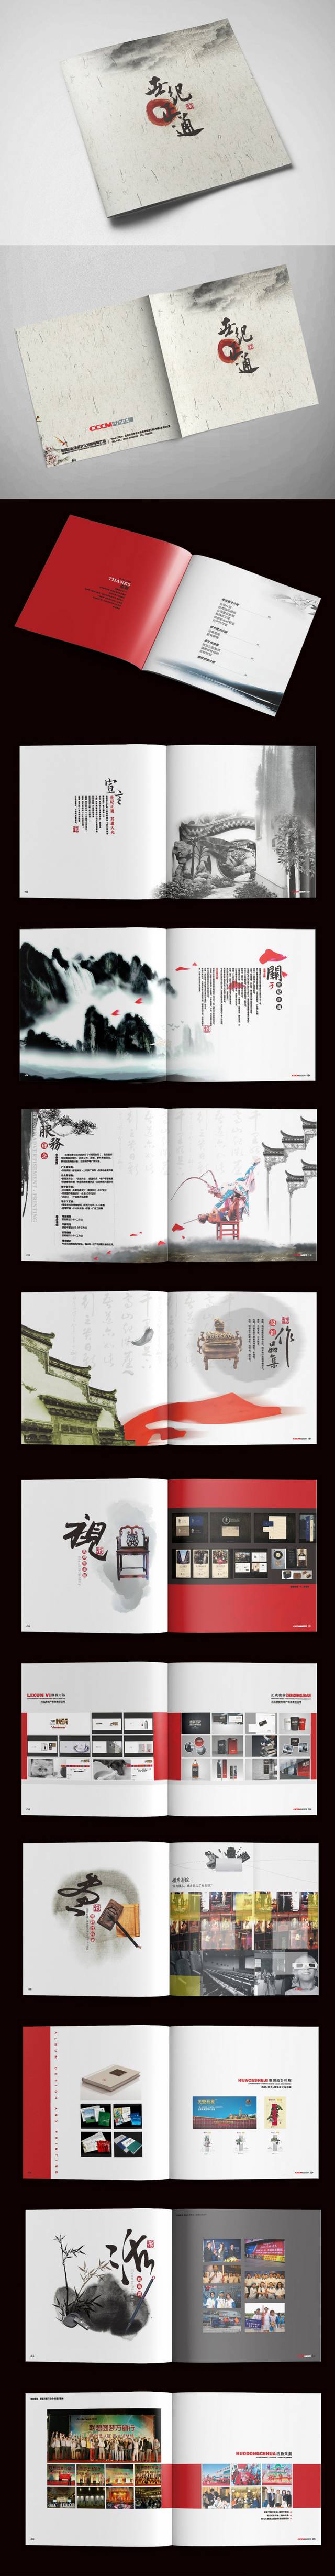 中国风广告宣传画册